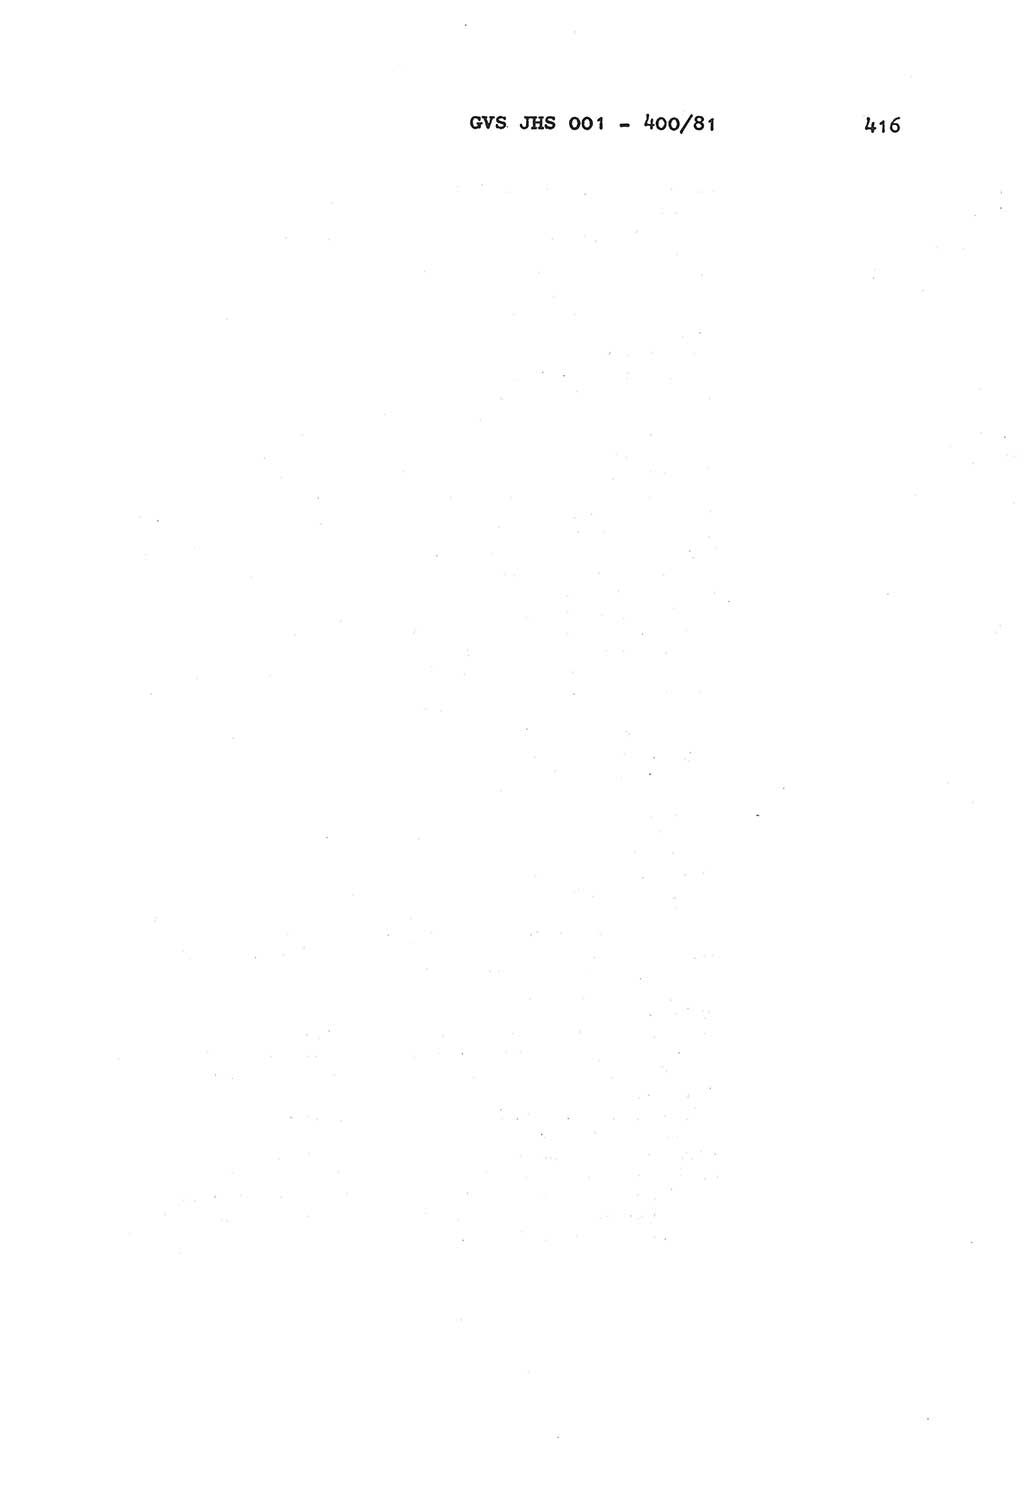 Wörterbuch der politisch-operativen Arbeit, Ministerium für Staatssicherheit (MfS) [Deutsche Demokratische Republik (DDR)], Juristische Hochschule (JHS), Geheime Verschlußsache (GVS) o001-400/81, Potsdam 1985, Blatt 416 (Wb. pol.-op. Arb. MfS DDR JHS GVS o001-400/81 1985, Bl. 416)